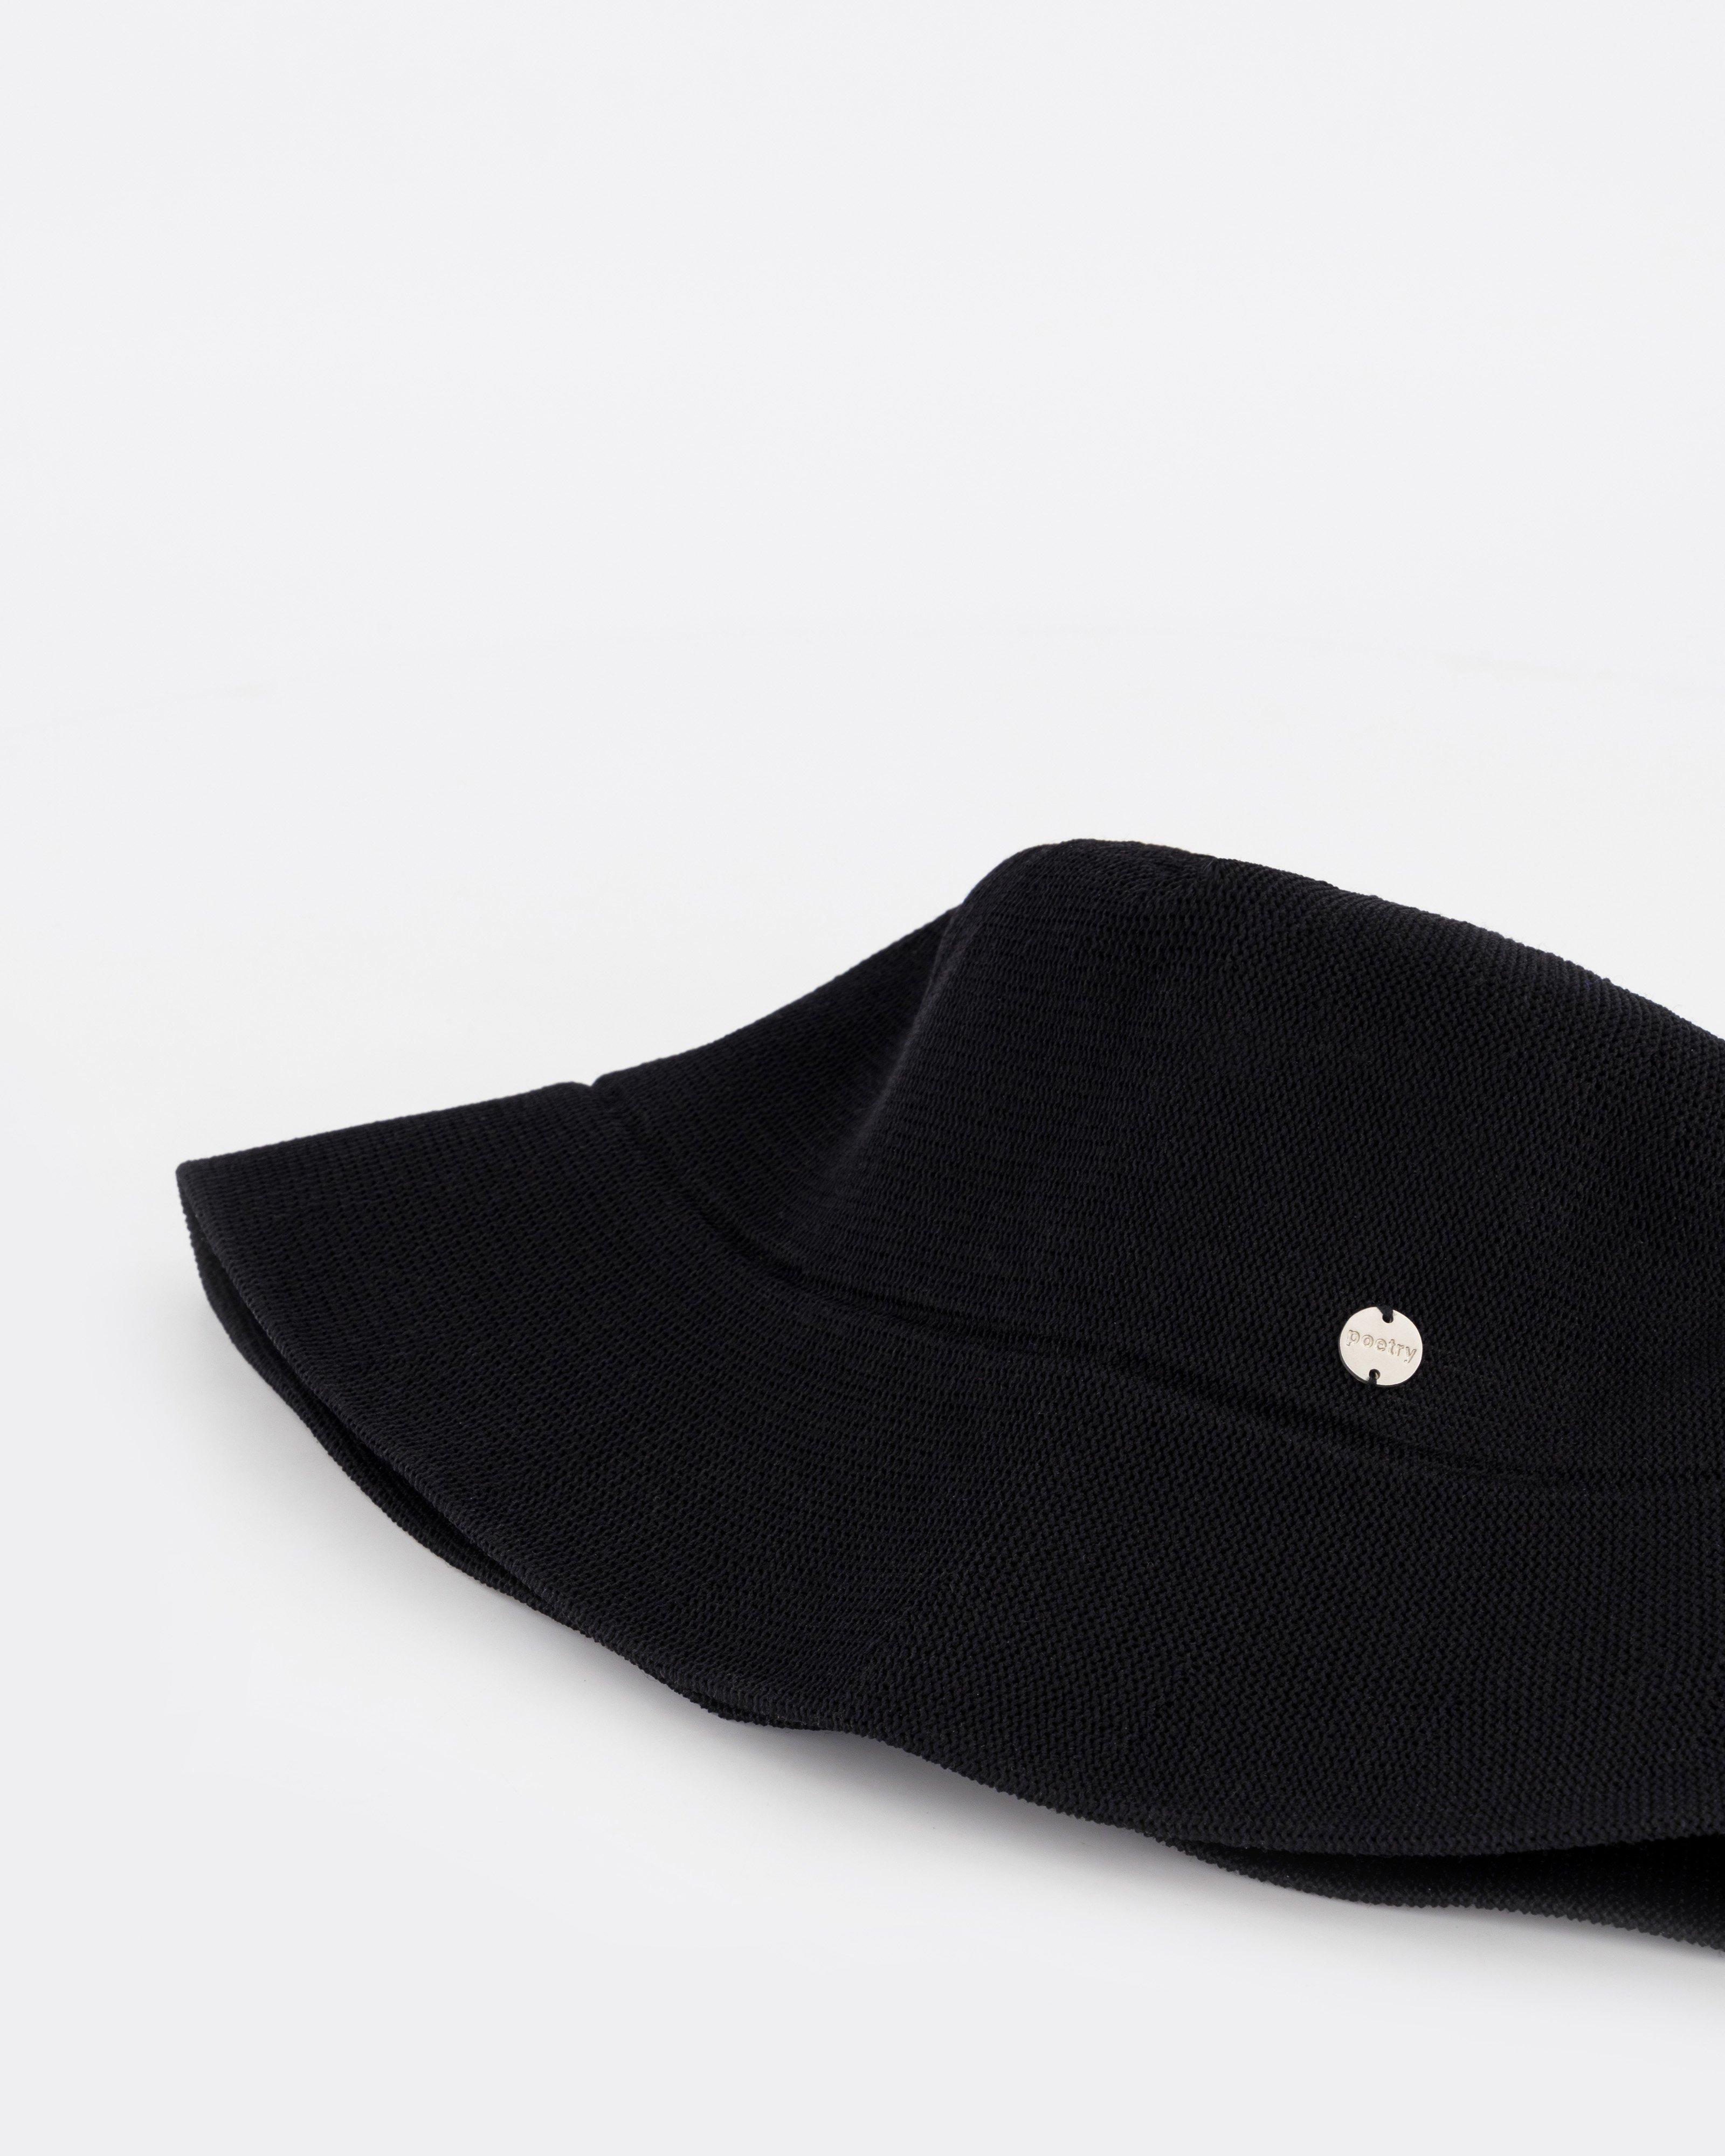 Malindi Knitted Bucket Hat -  Black